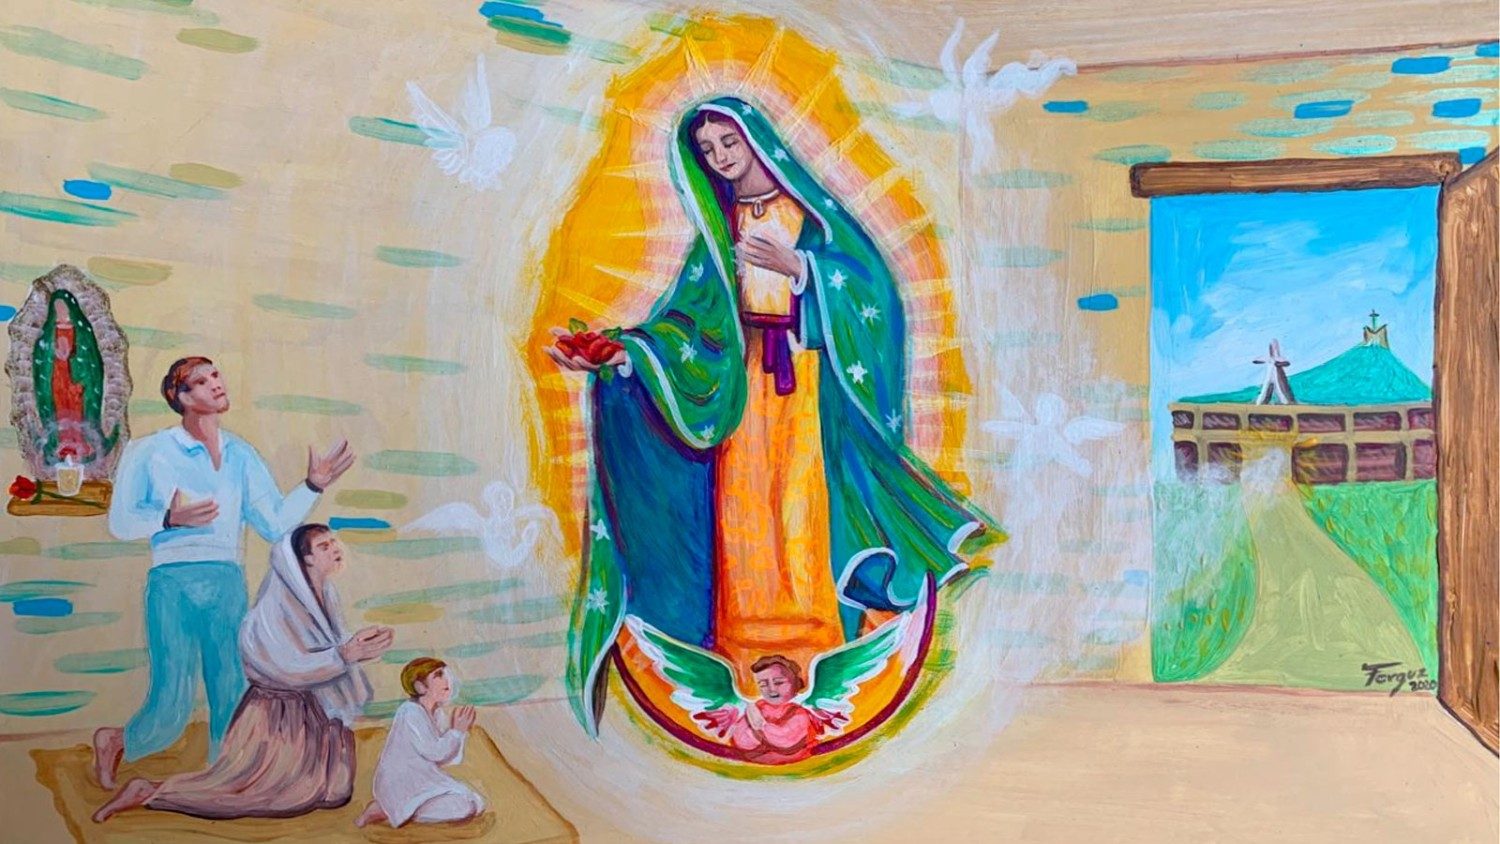 Nuestra Señora de Guadalupe - 12 de diciembre - México